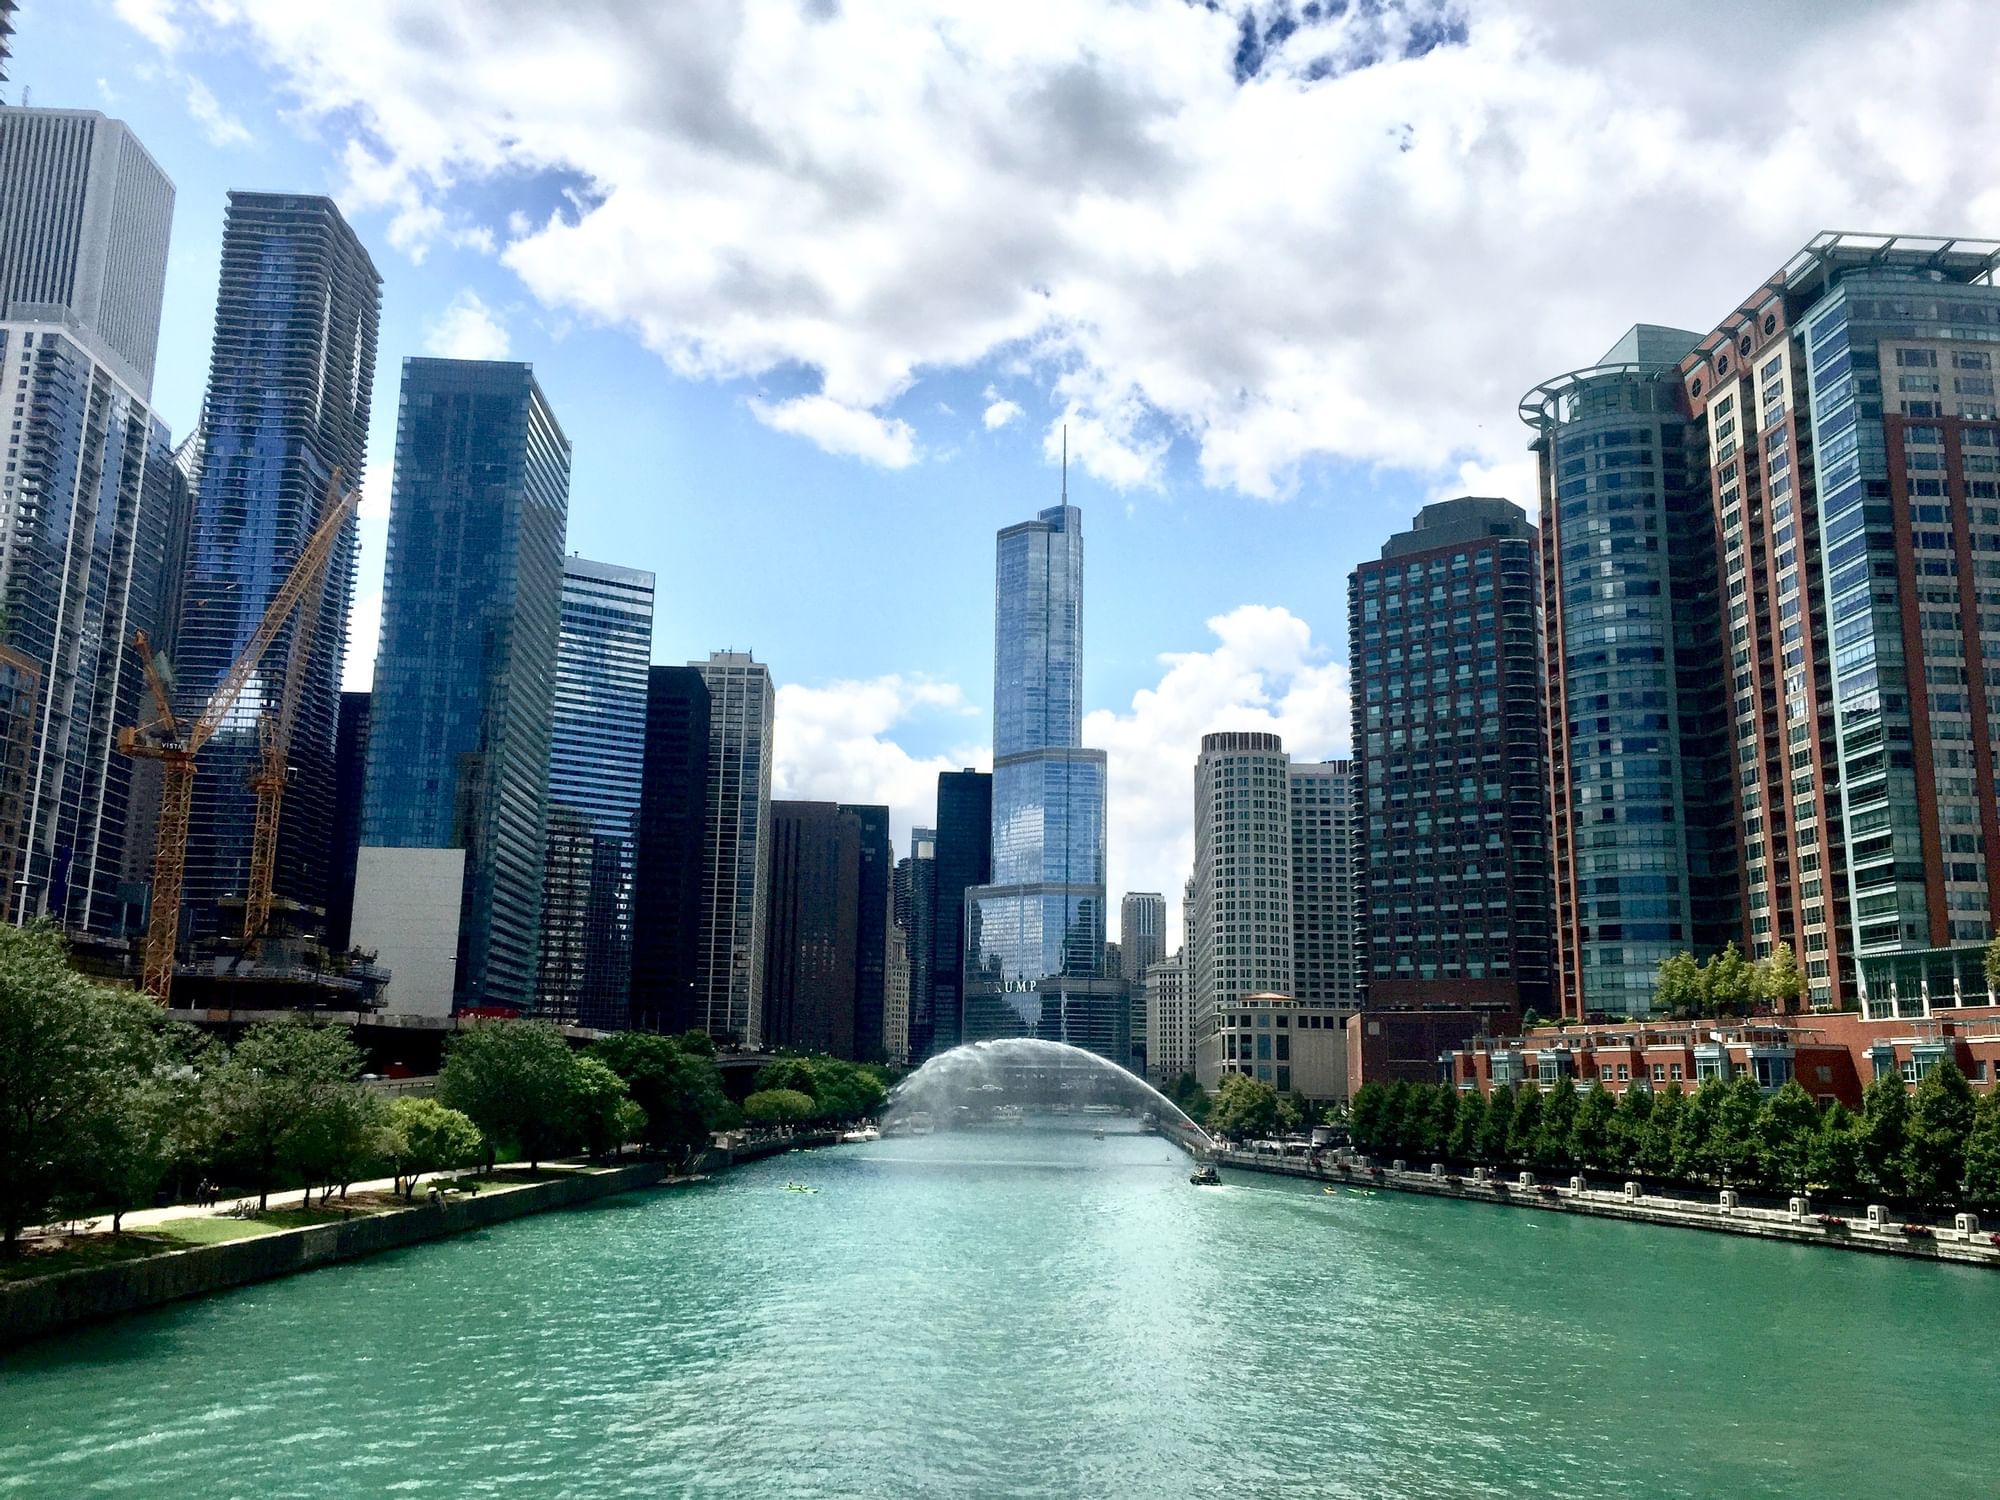 Landscape view of Chicago Riverwalk near Hotel Saint Clair